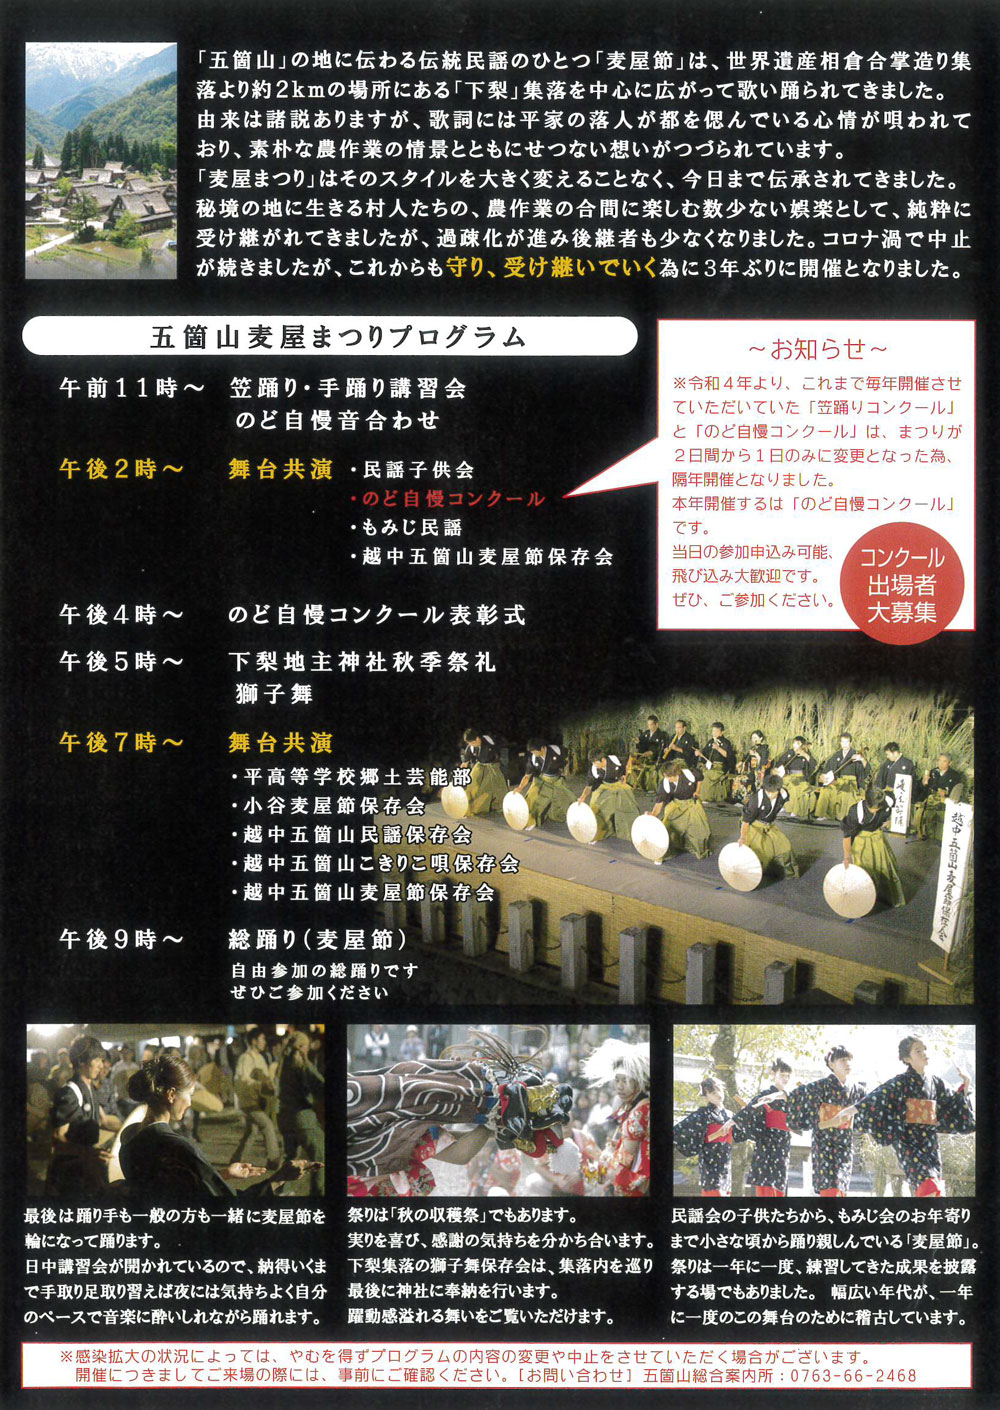 富山県南砺市で開催される「五箇山麦屋祭」のイベント情報